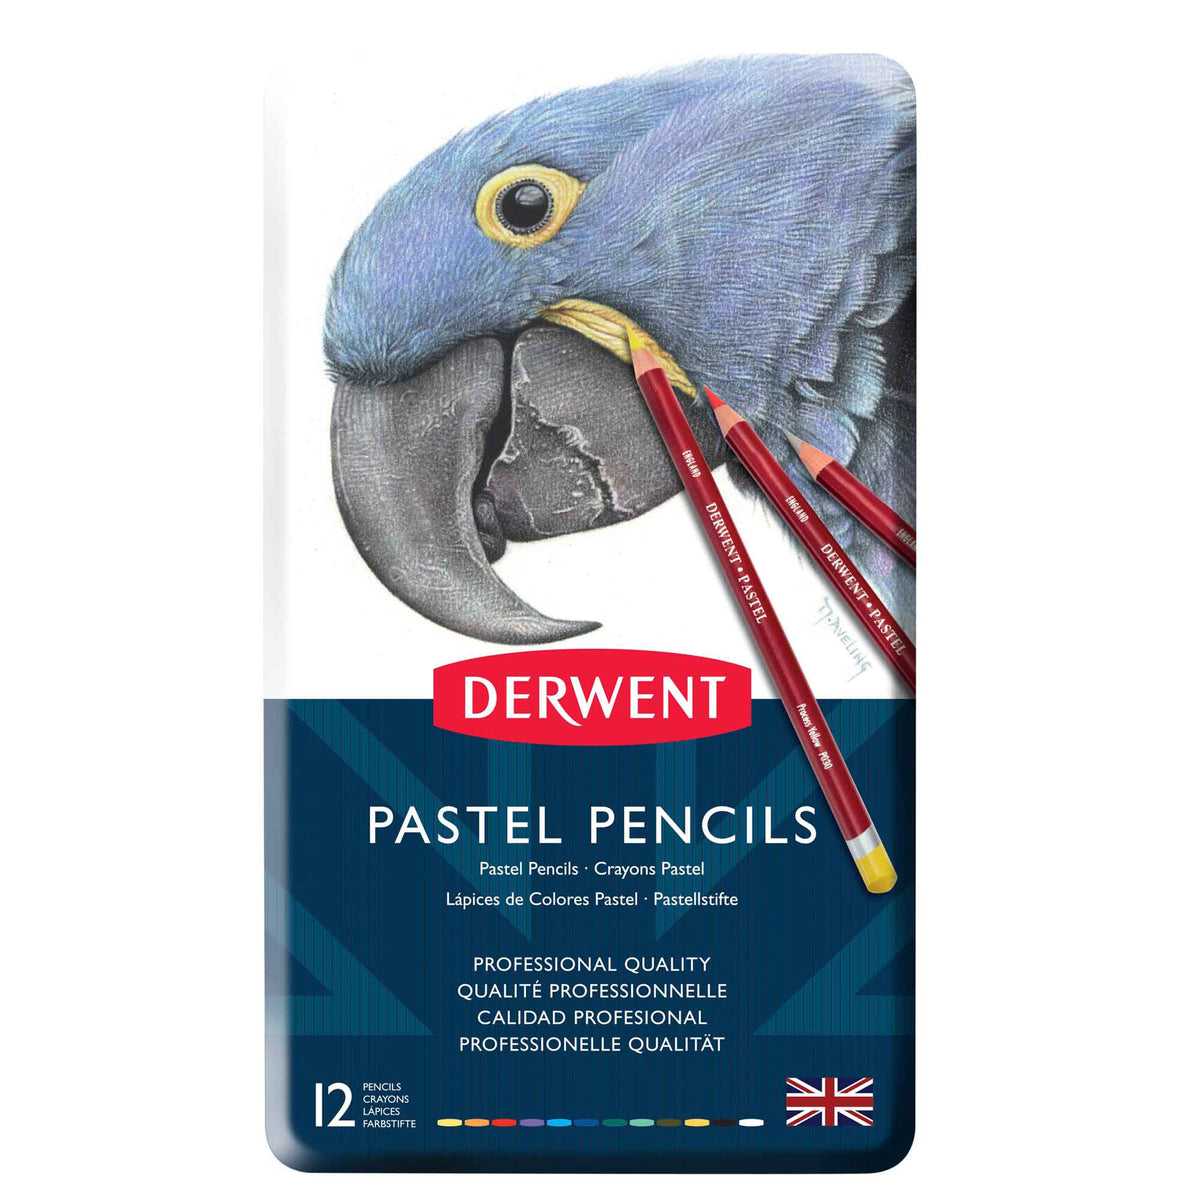 Derwent Pastel Pencil Metal Tins - Set of 12